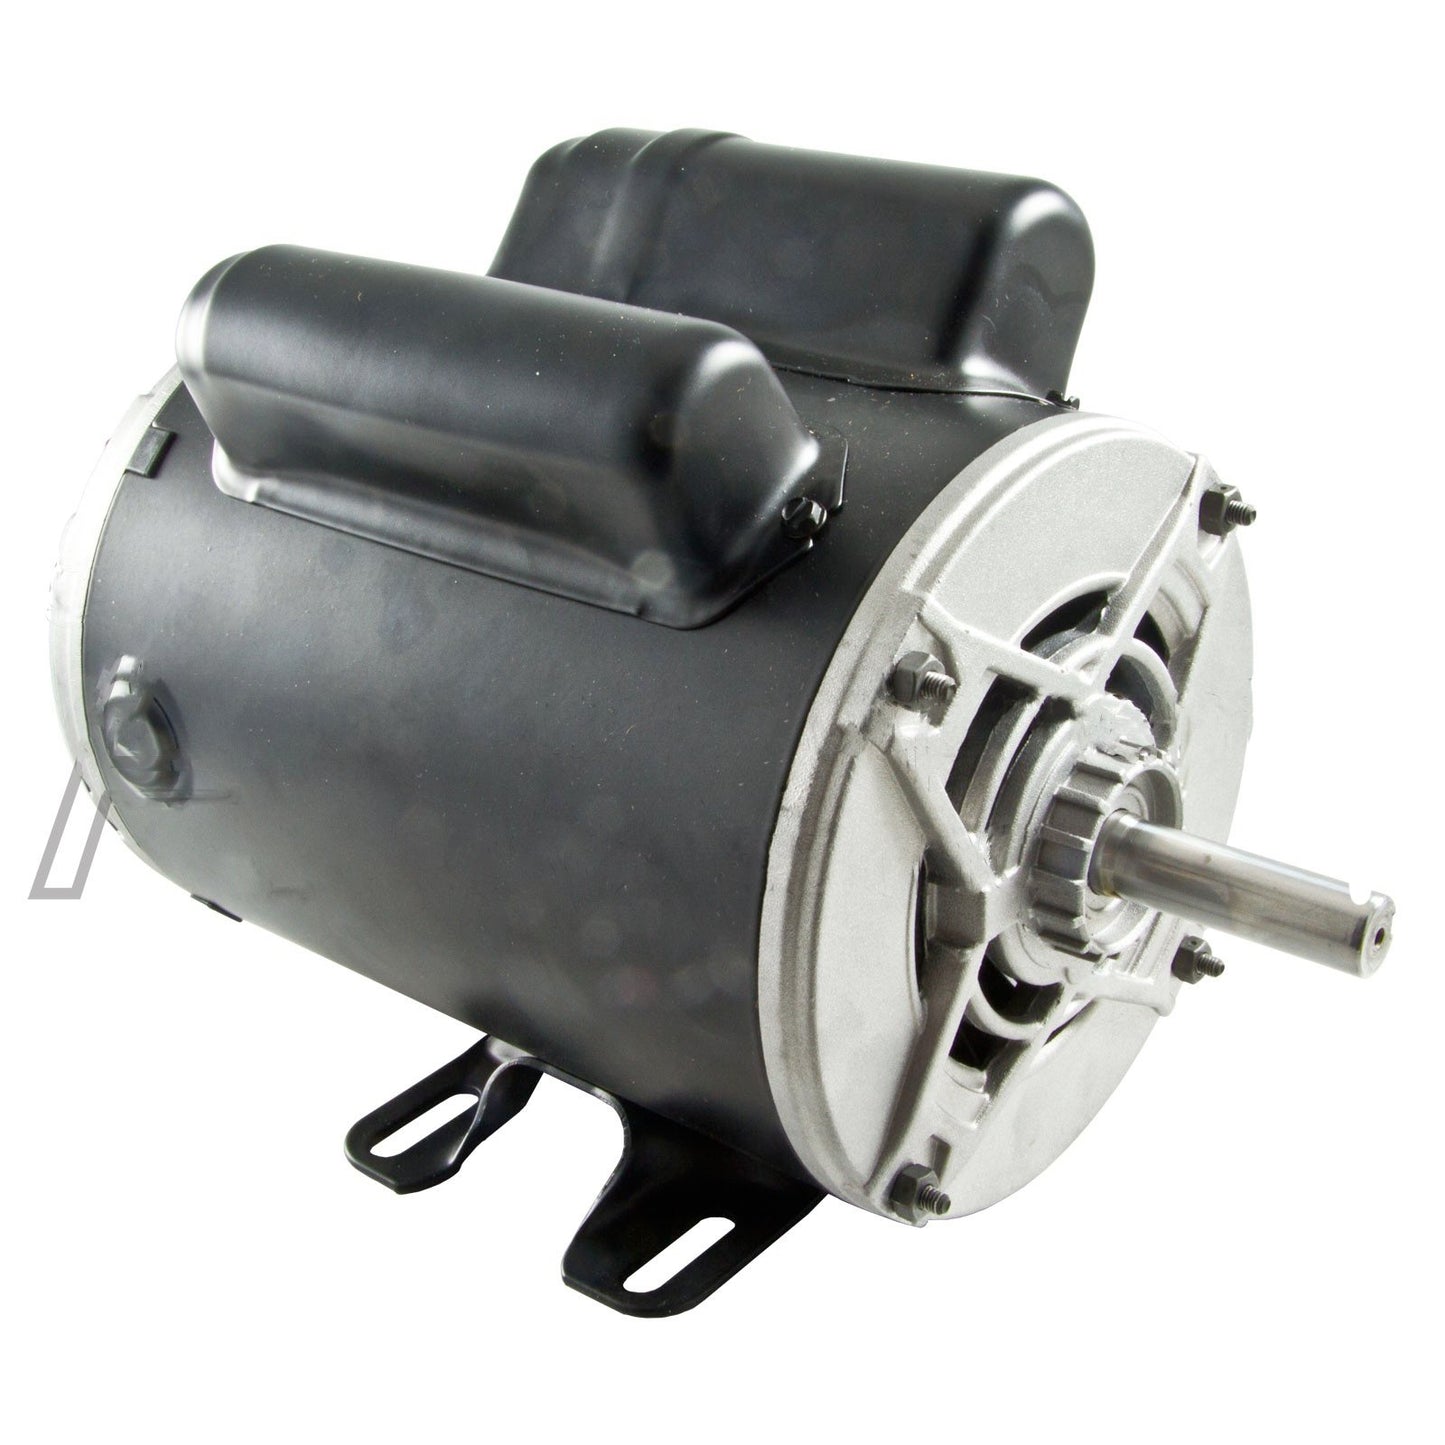 Motor For Air Compressor EM05.0-36-10SPL